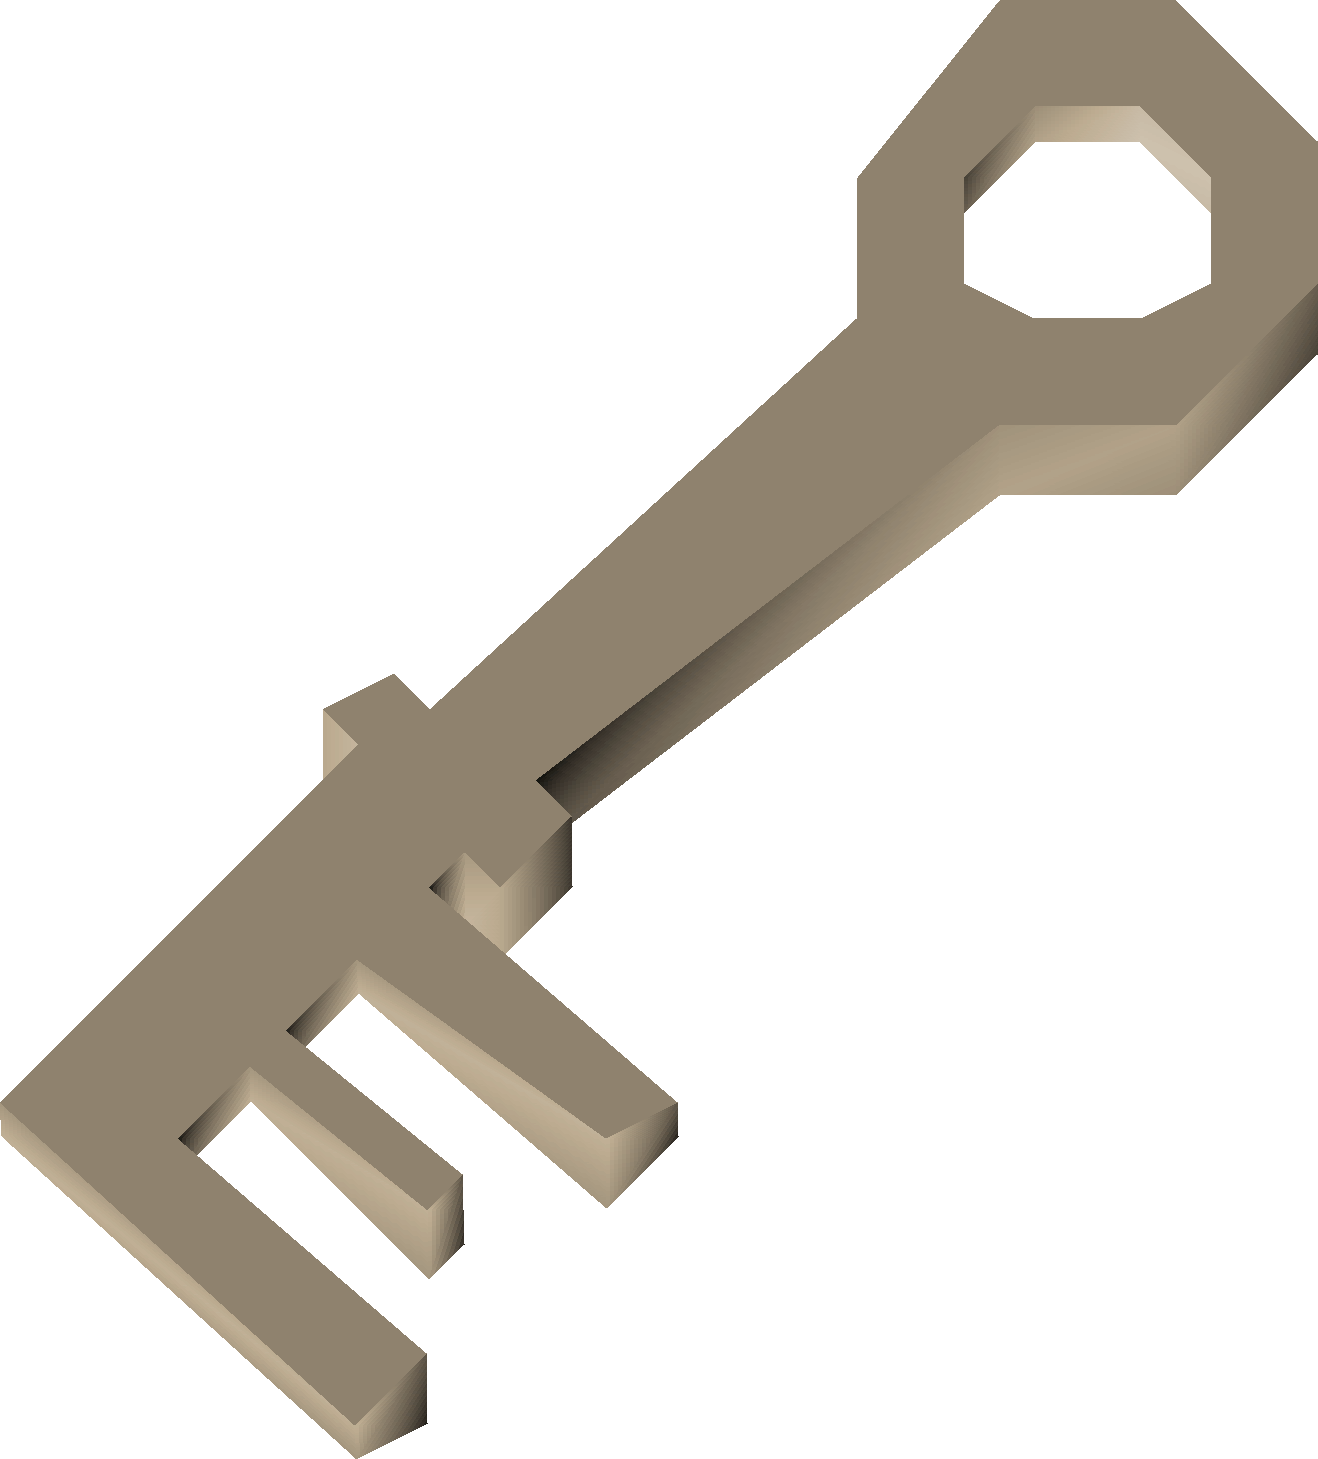 Metal key | Old School RuneScape Wiki | FANDOM powered by Wikia